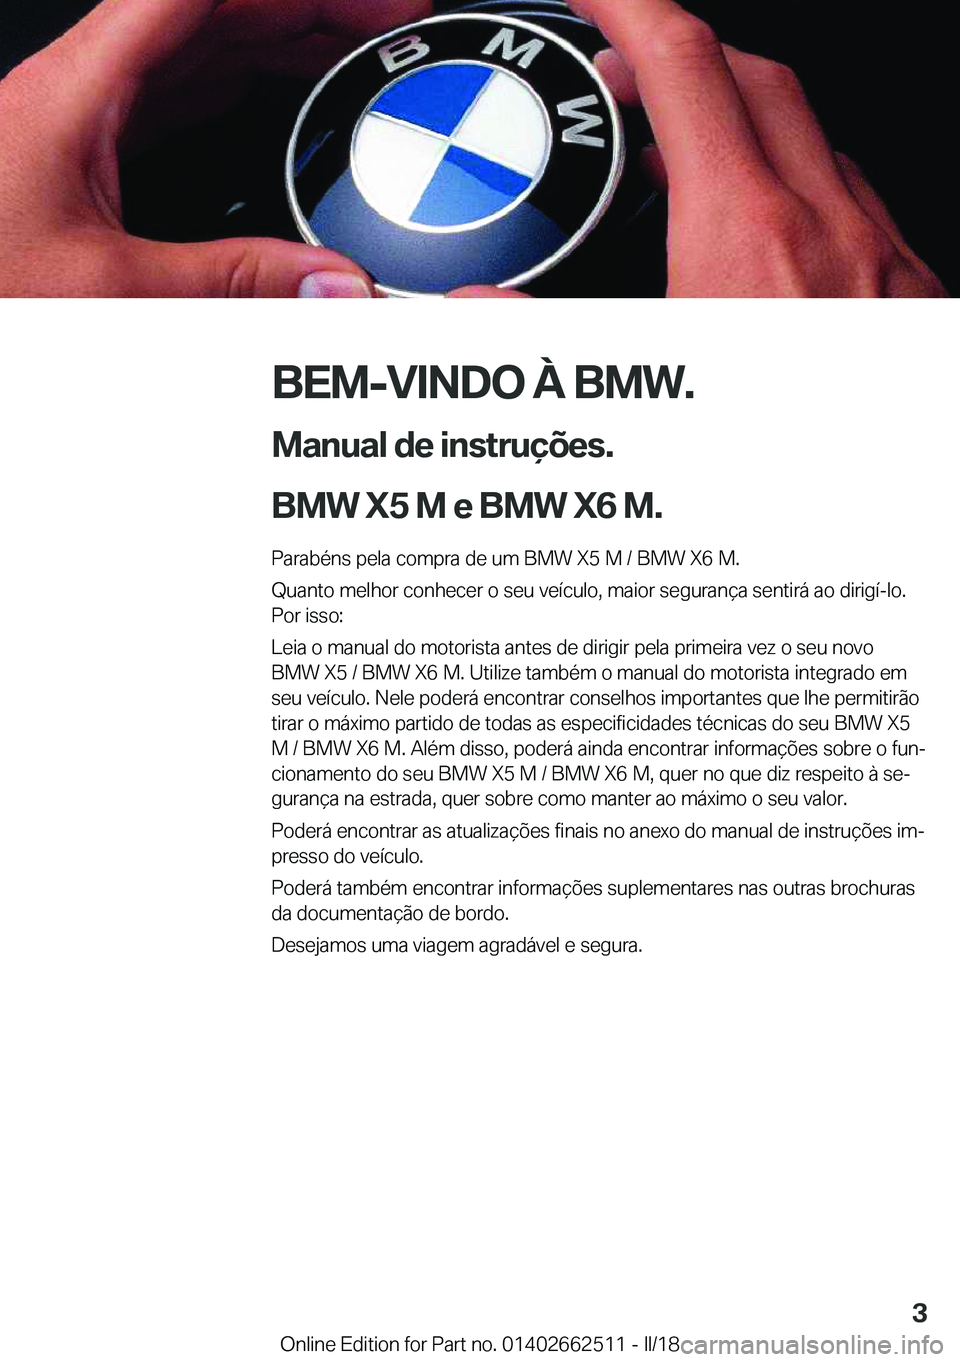 BMW X5 M 2018  Manual do condutor (in Portuguese) �B�E�M�-�V�I�N�D�O��À��B�M�W�.
�M�a�n�u�a�l��d�e��i�n�s�t�r�u�